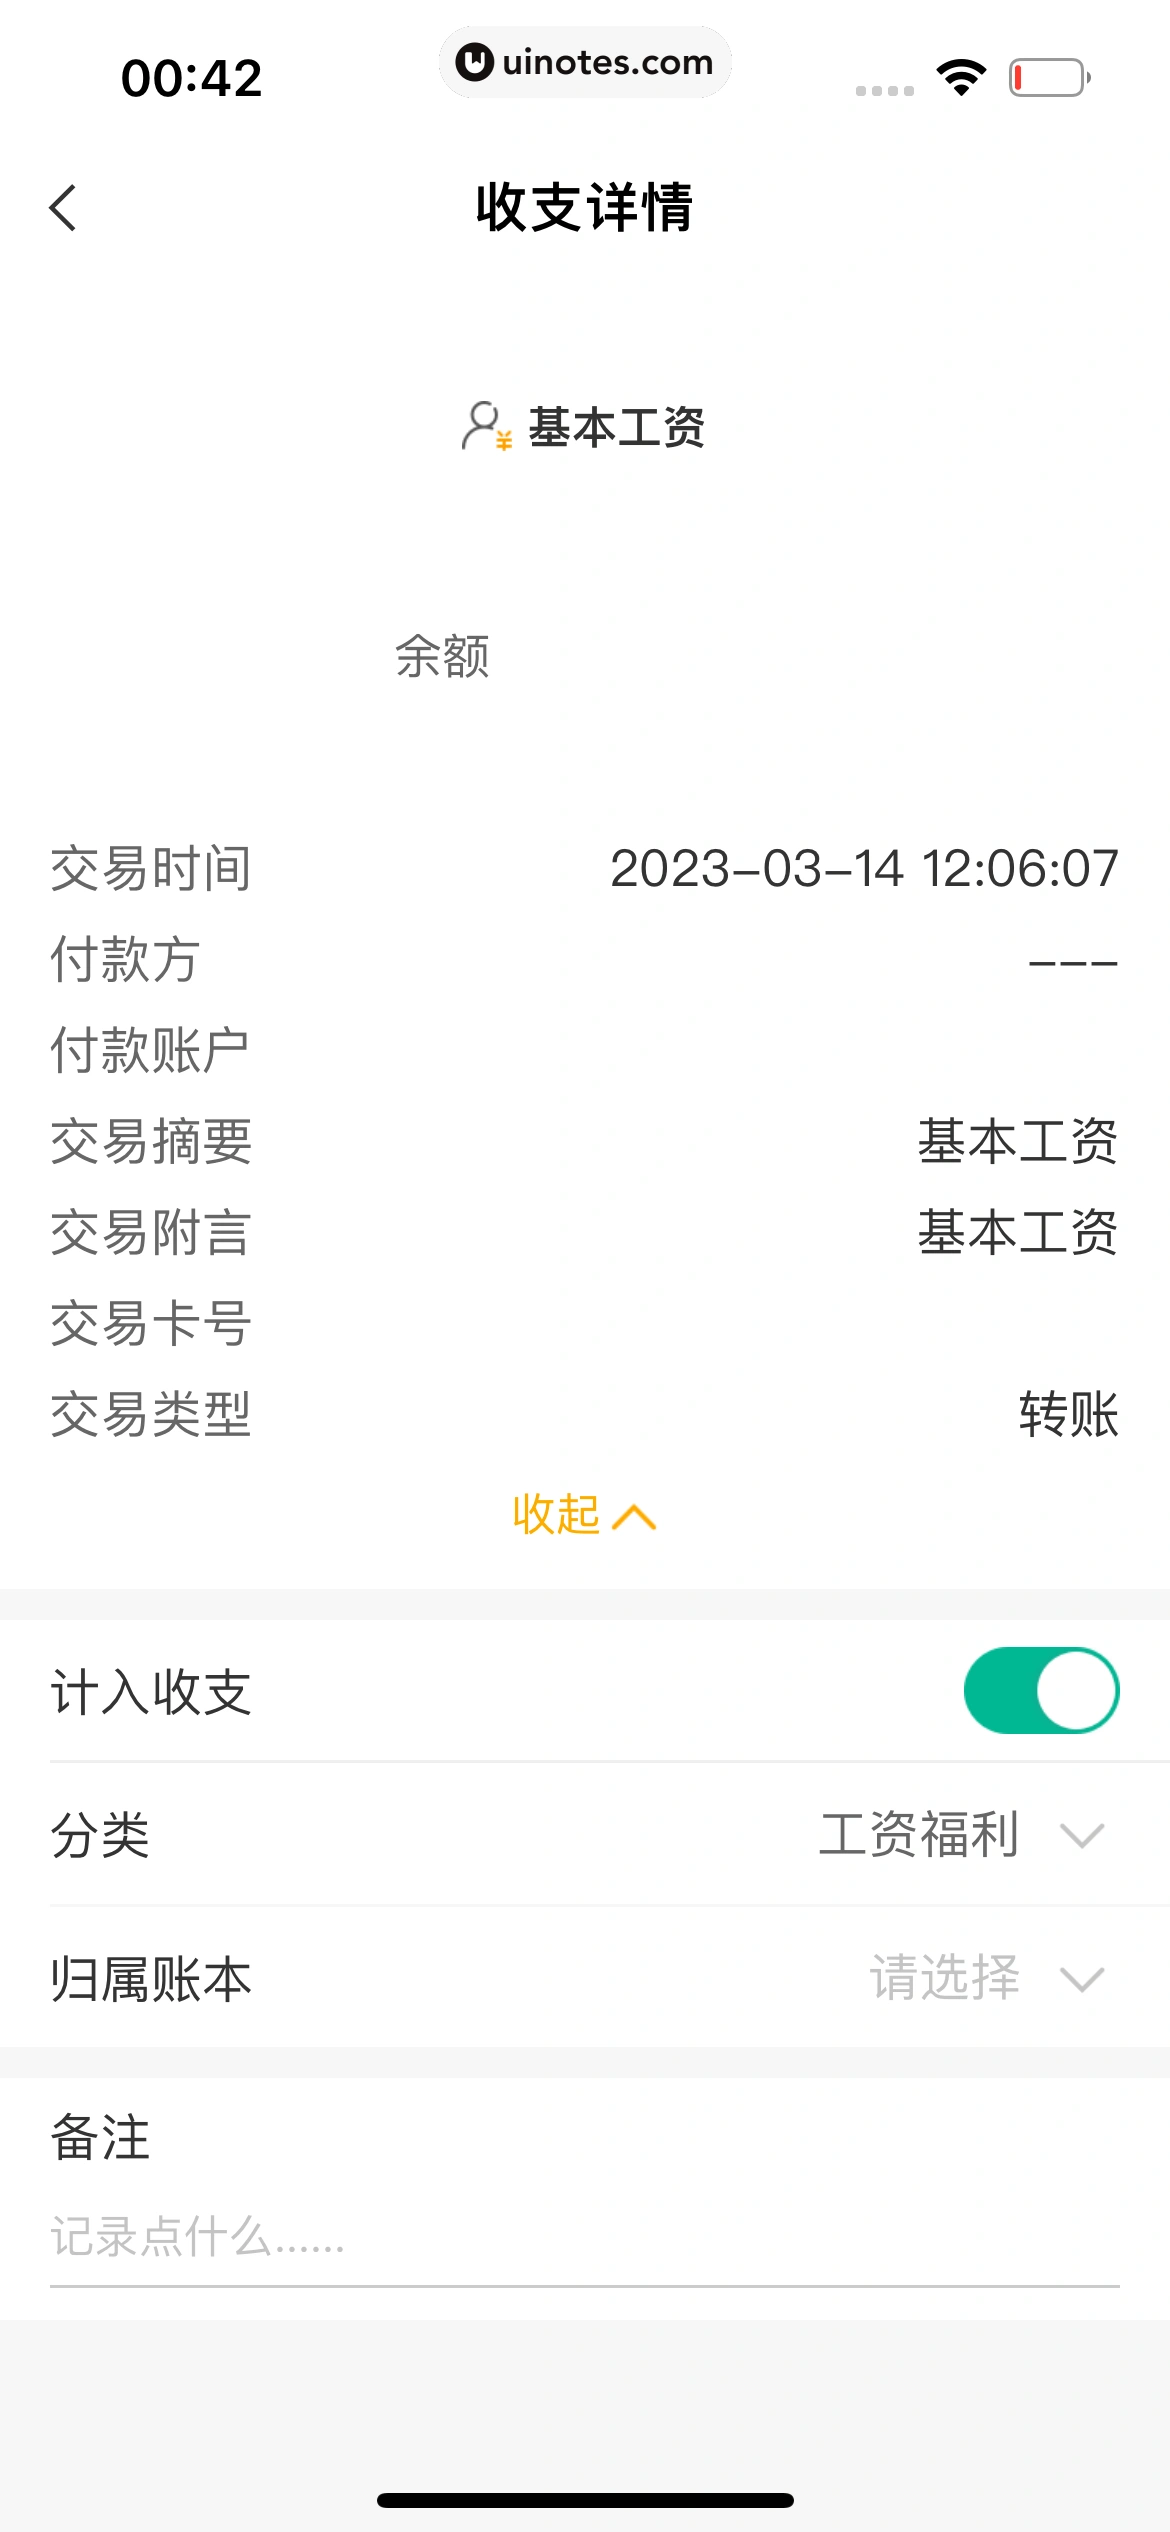 中国农业银行 App 截图 194 - UI Notes